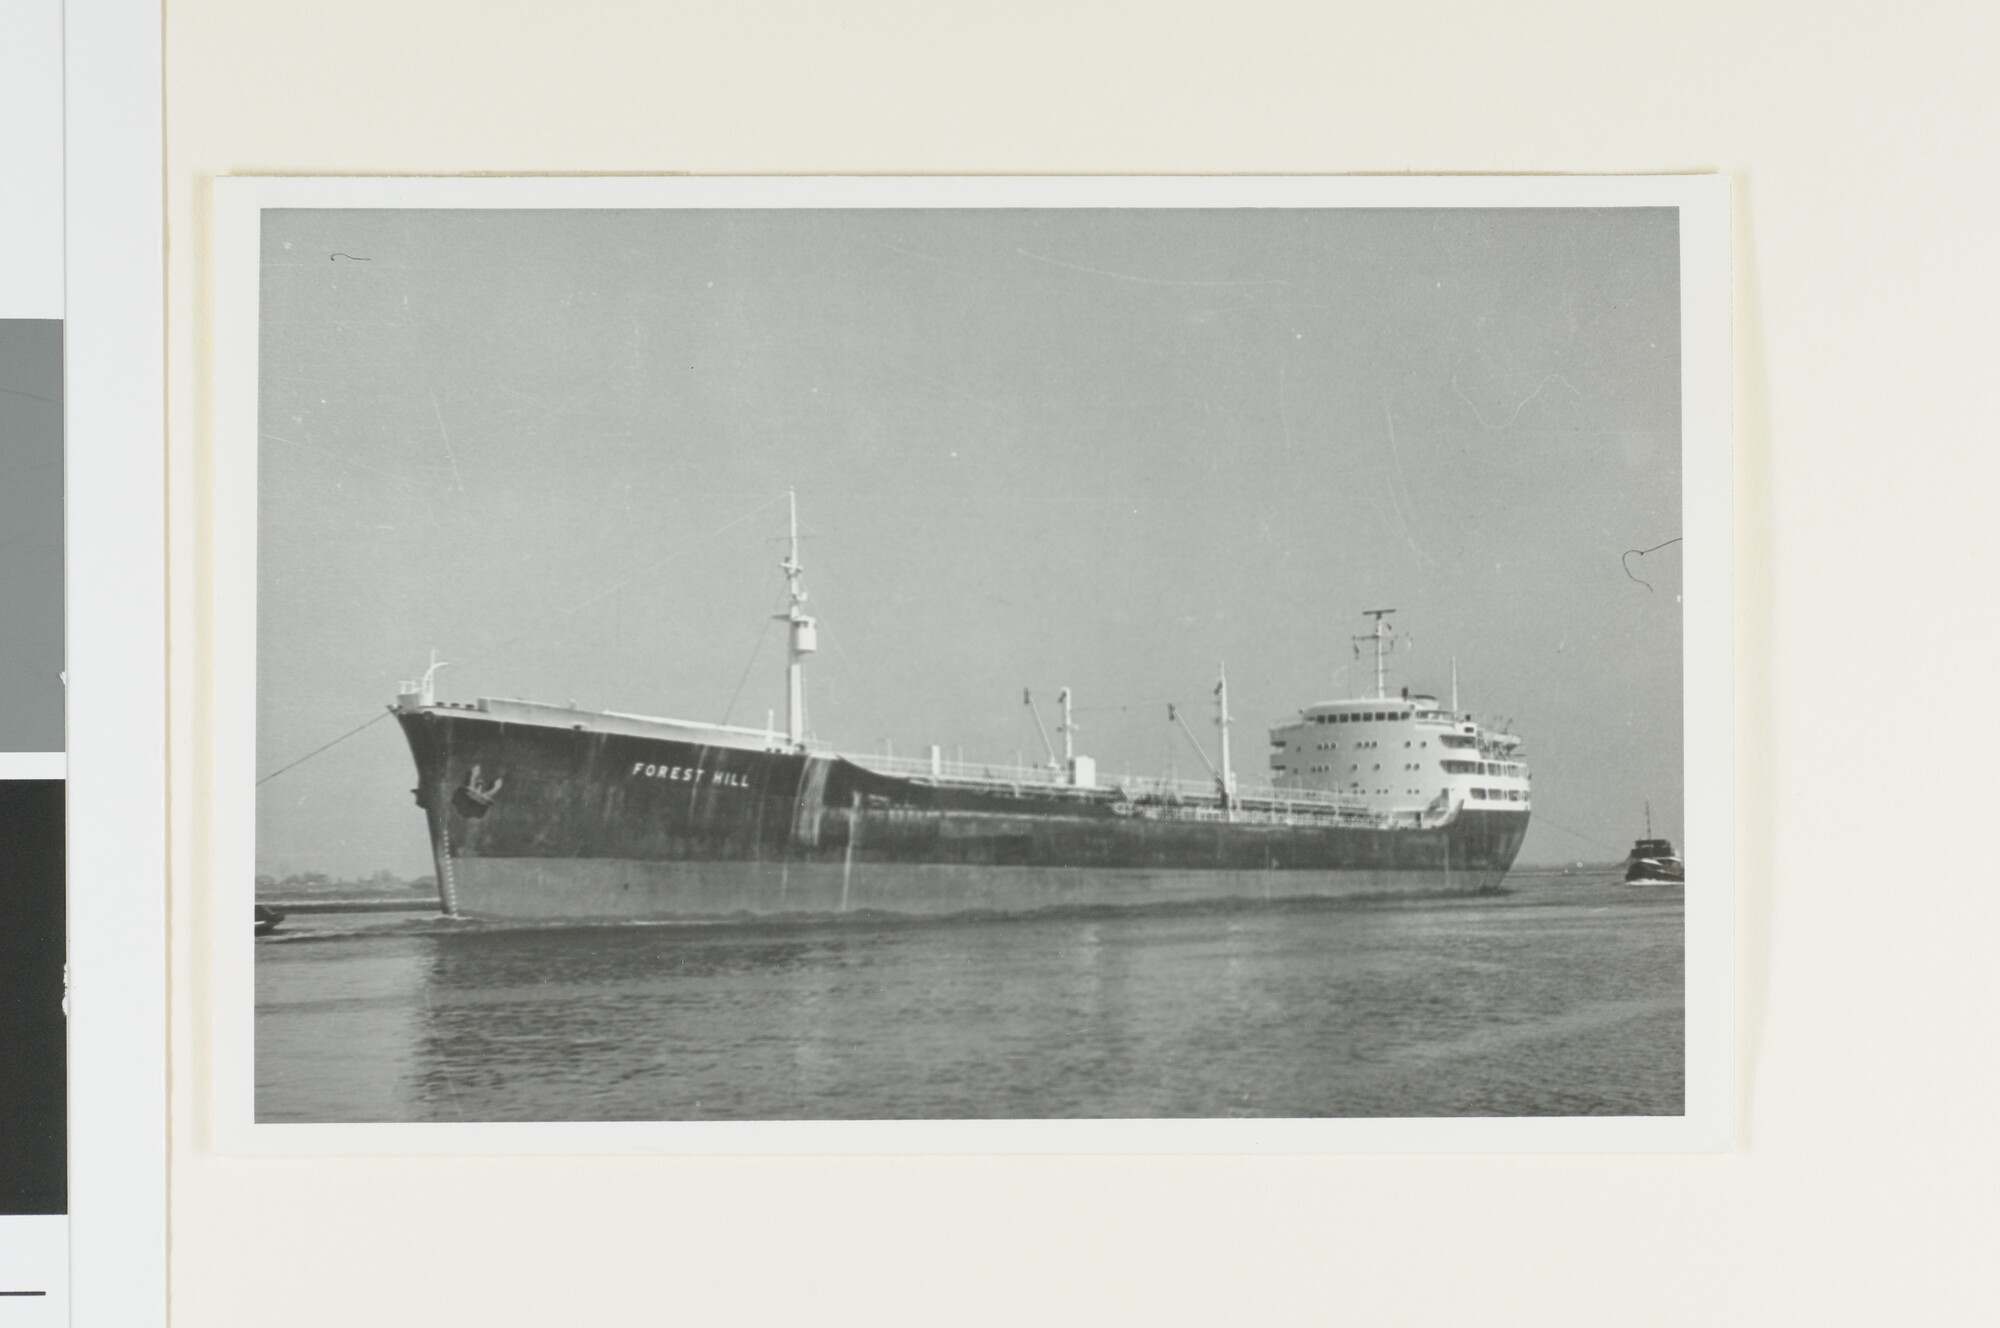 A.4252(22); De tanker ms. 'Forest Hill' van de Nationale Tankvaart Maatschappij Natama te; foto